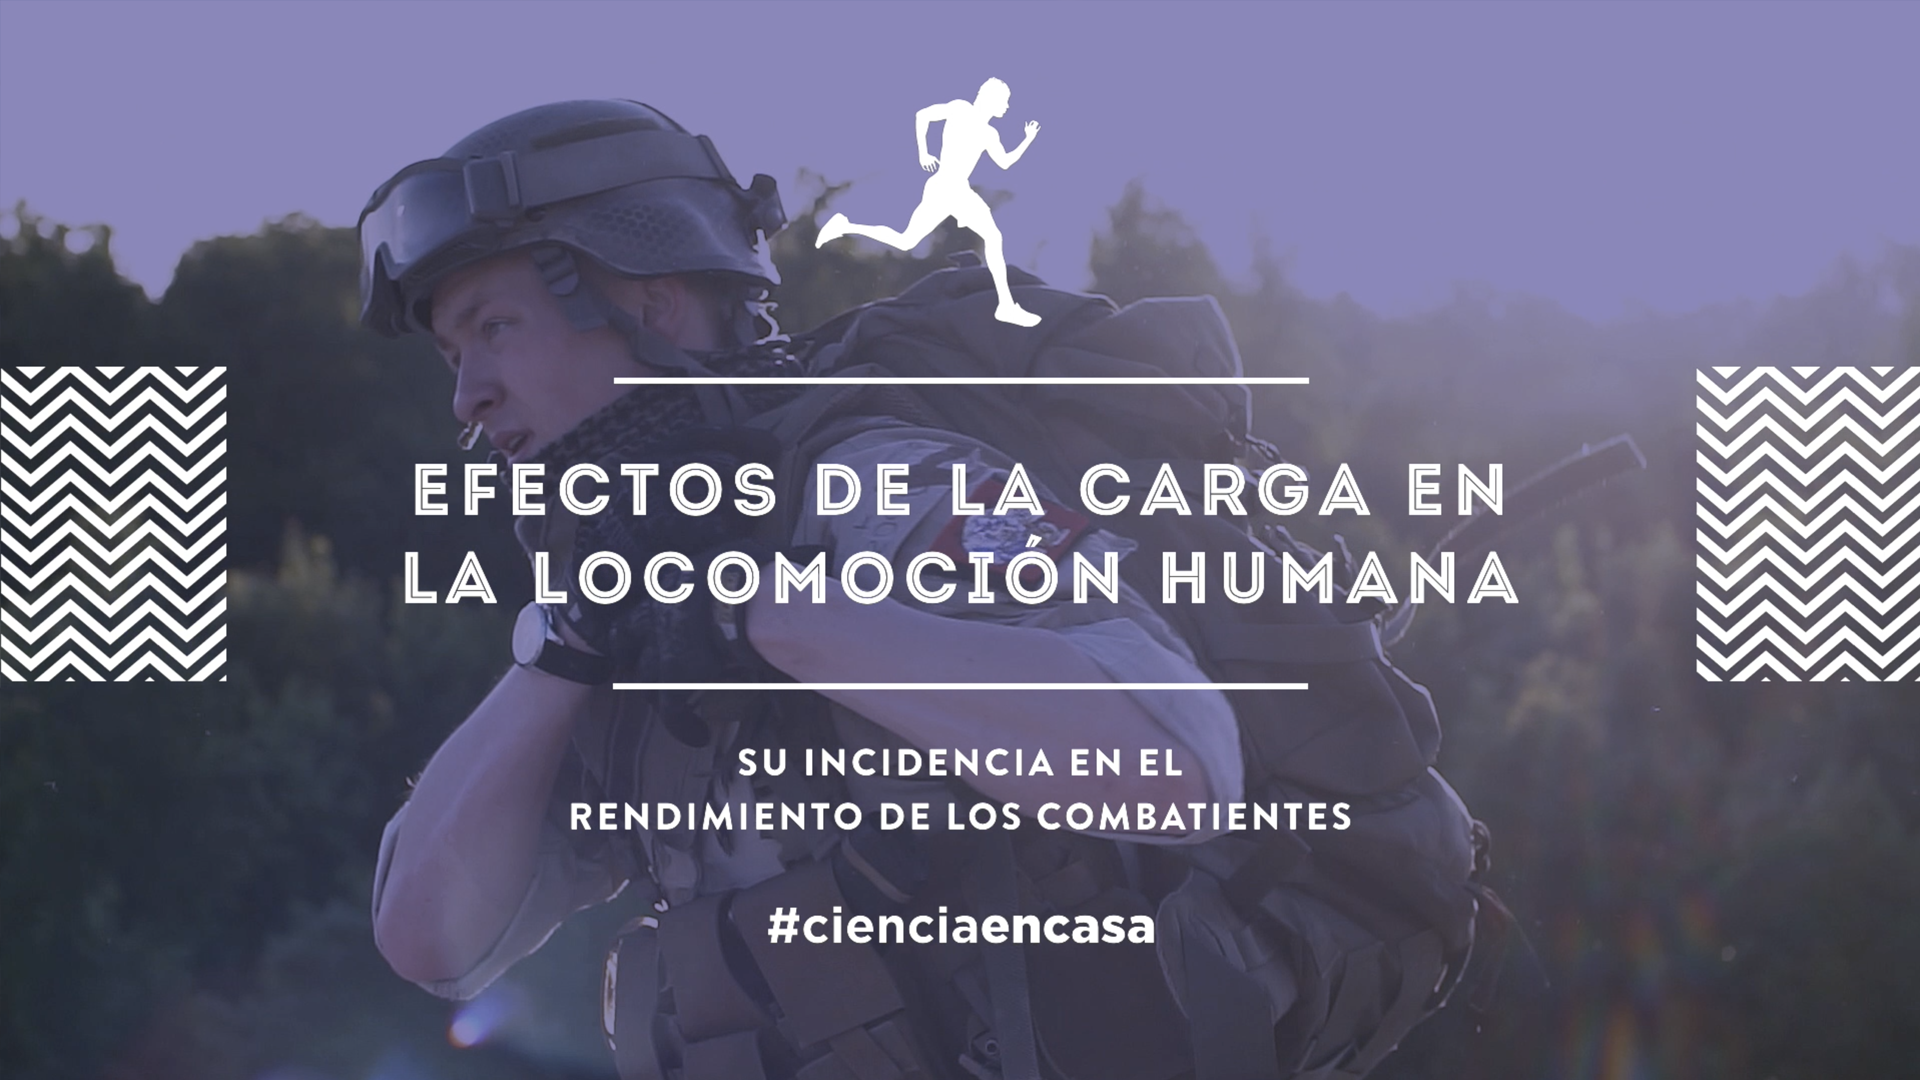 #CienciaEnCasa: “Efectos de la carga en la locomoción humana y su incidencia en el rendimiento de los combatientes”, por José María Heredia